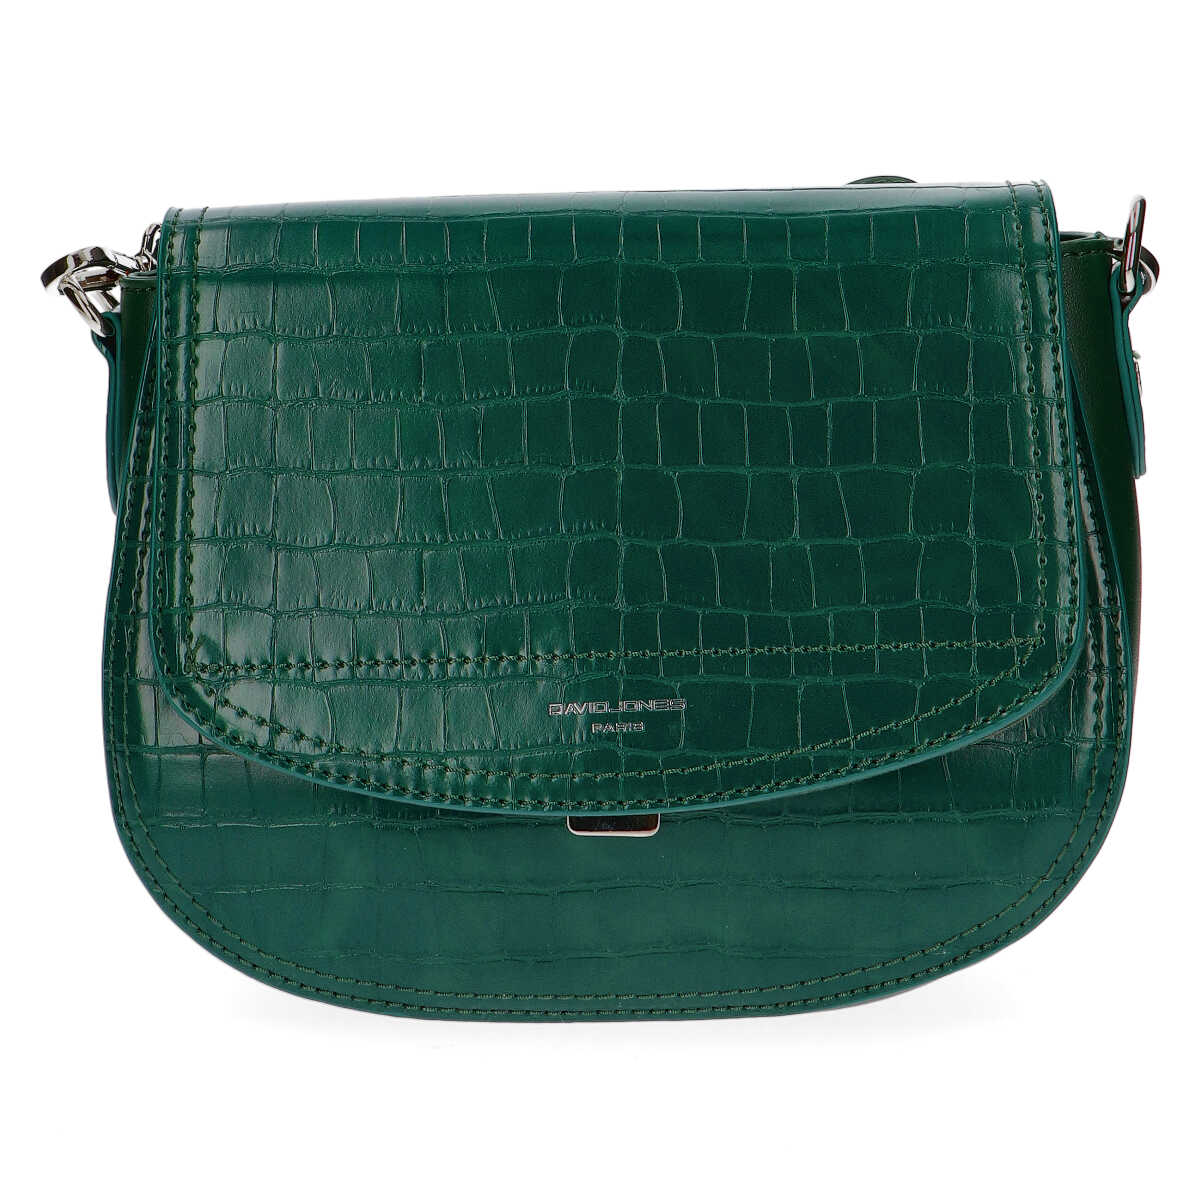 David Jones Dill Messenger Handbag in Green